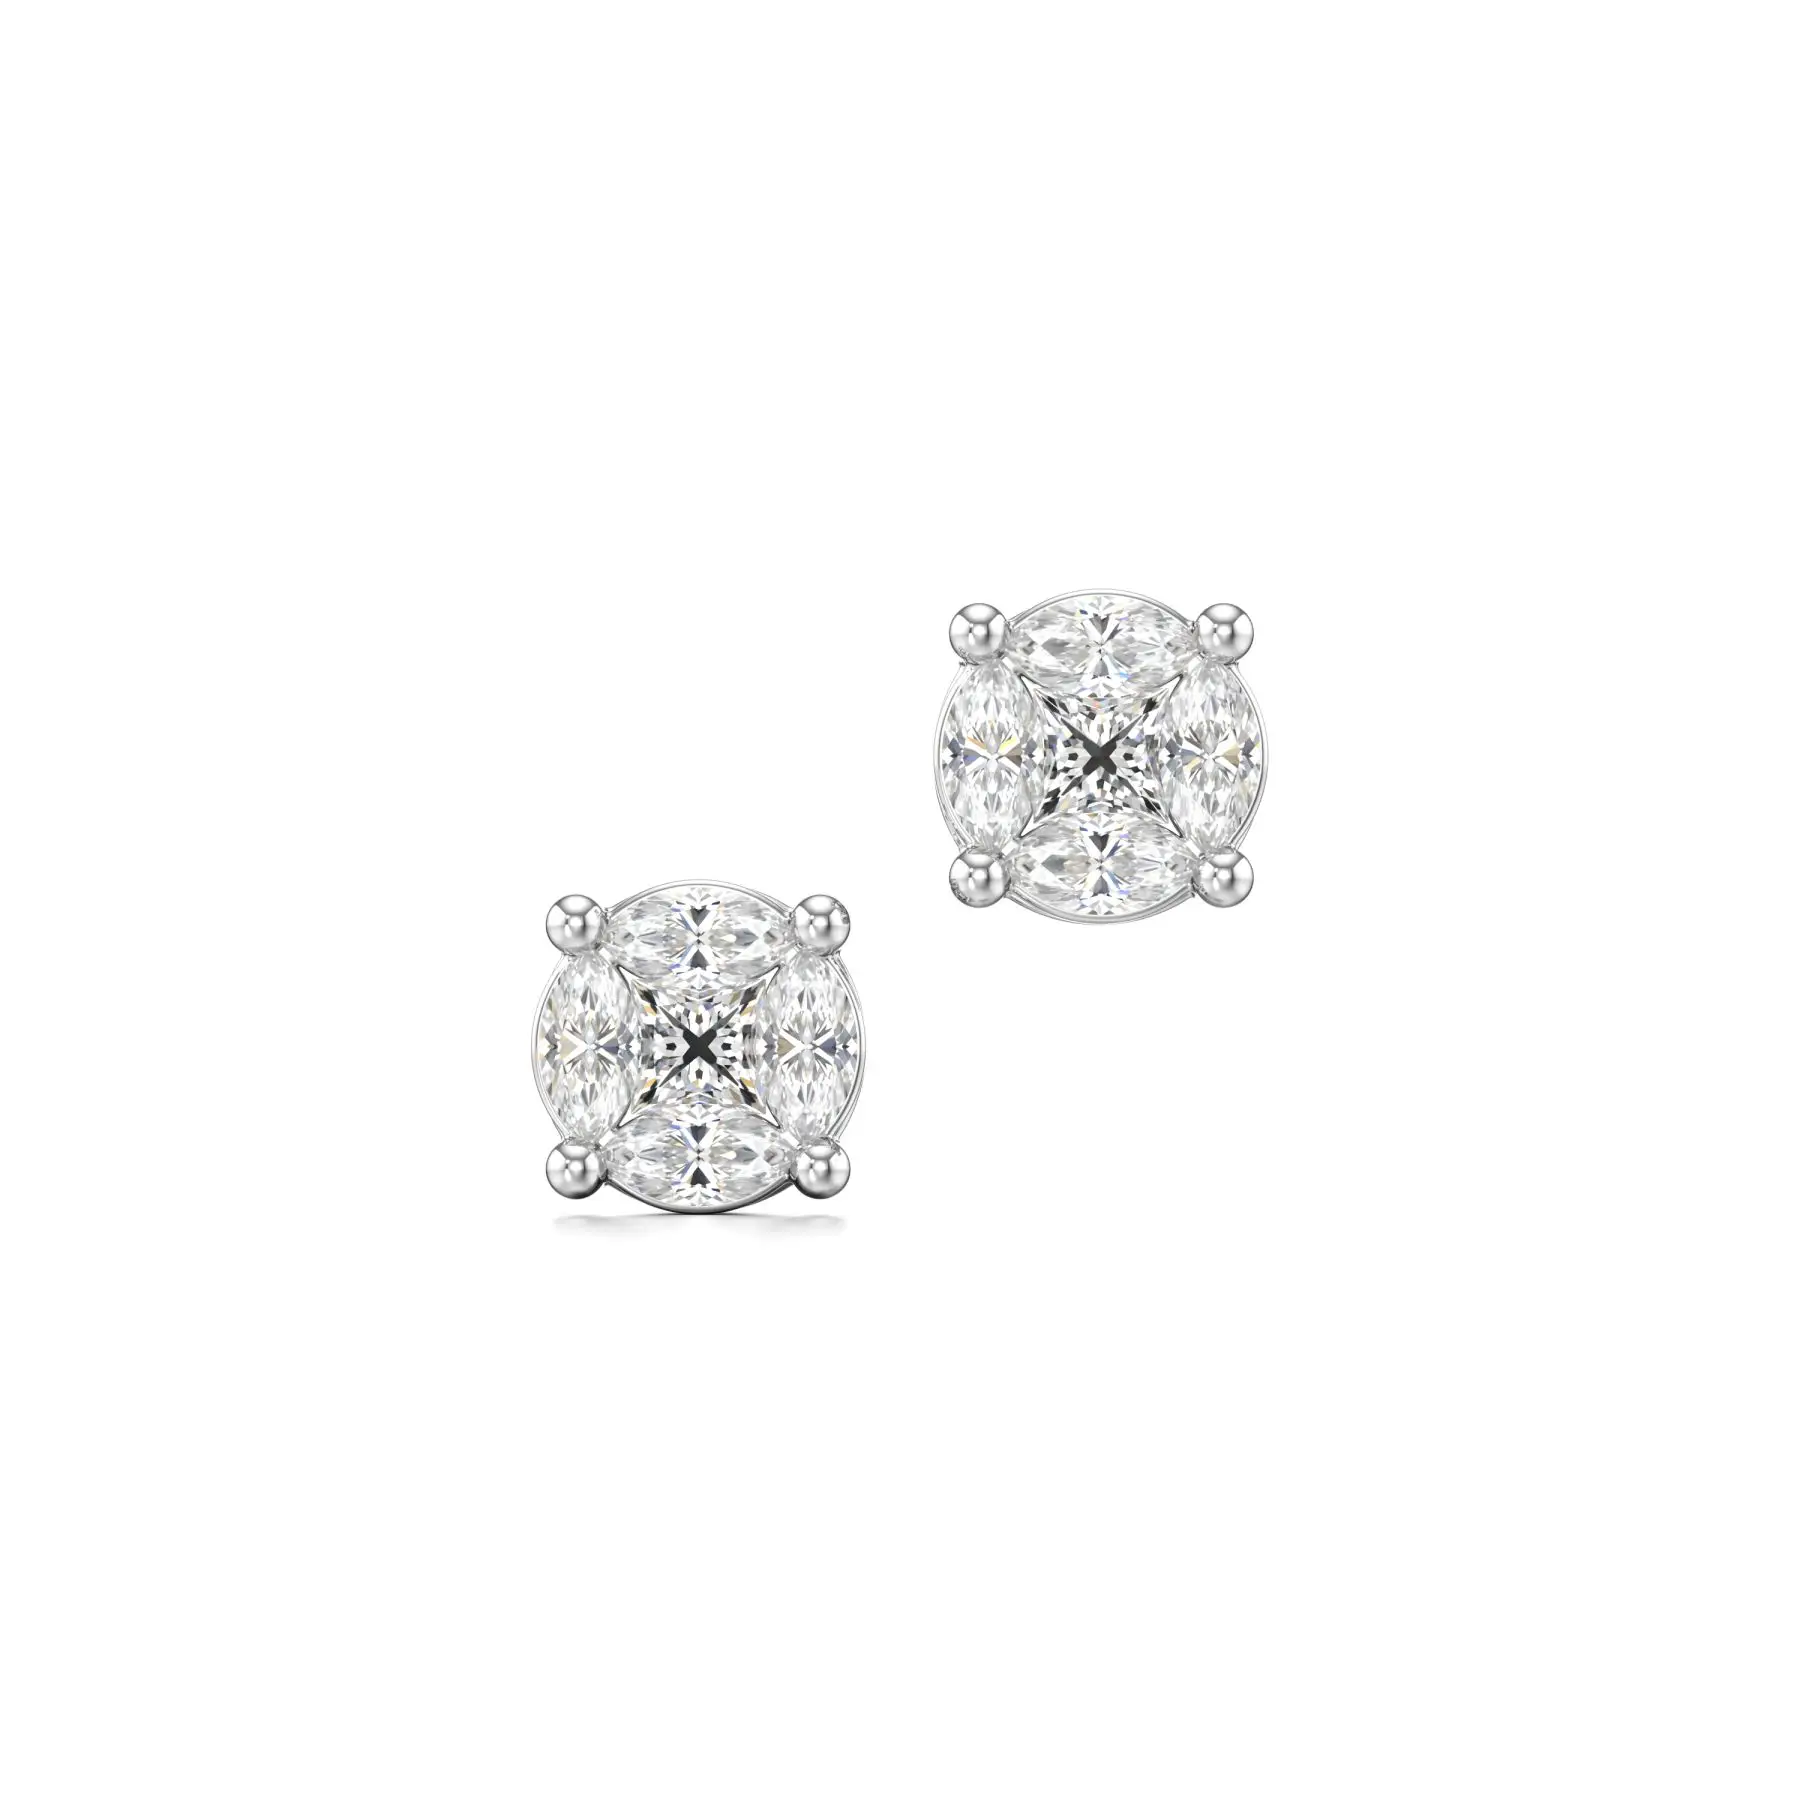 Fiery Round Diamond Earrings in White 10k Gold